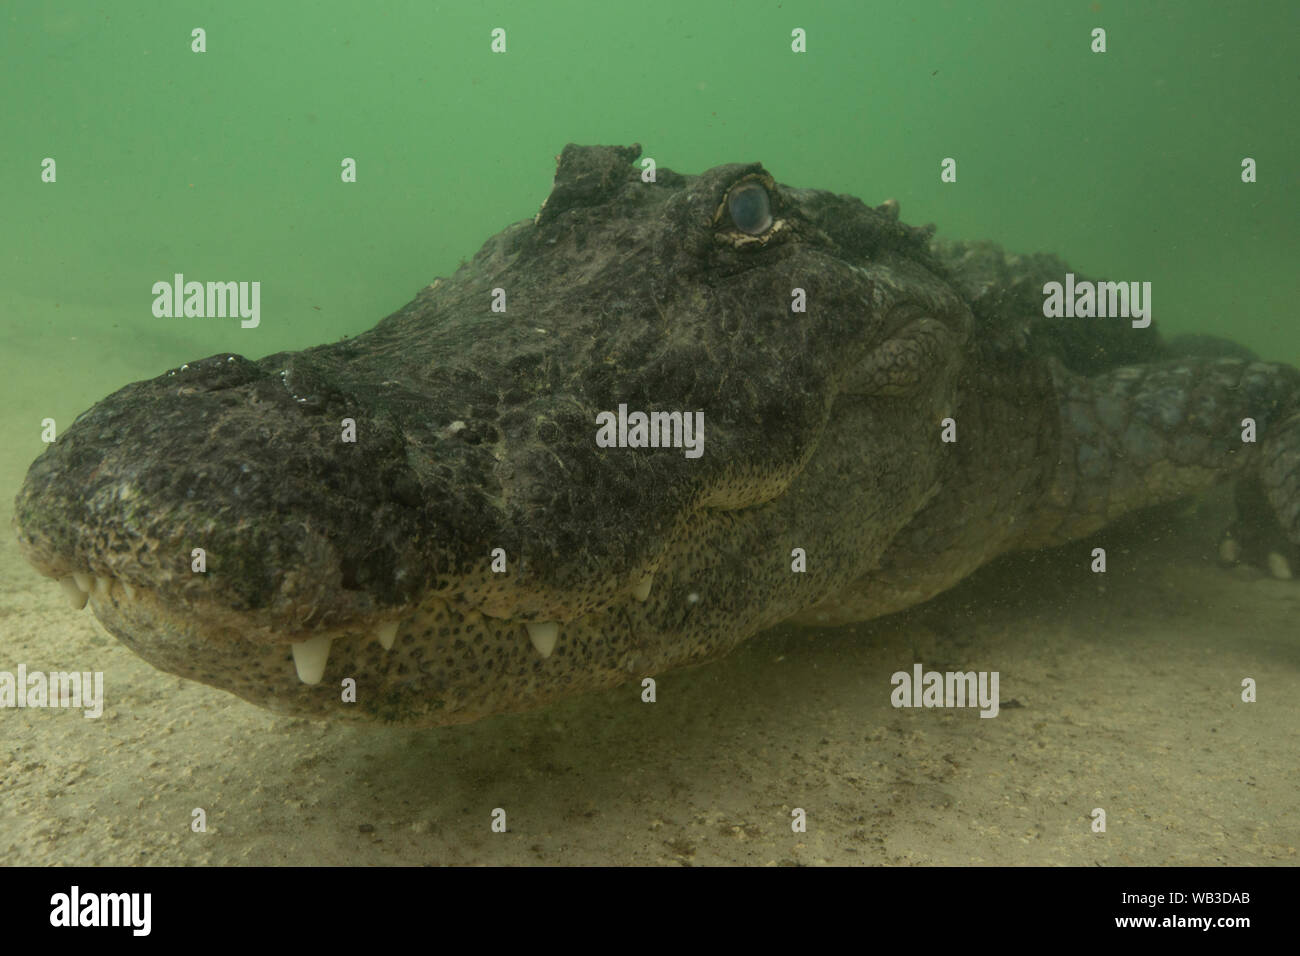 Da vicino e personale con la Florida Alligator Foto Stock